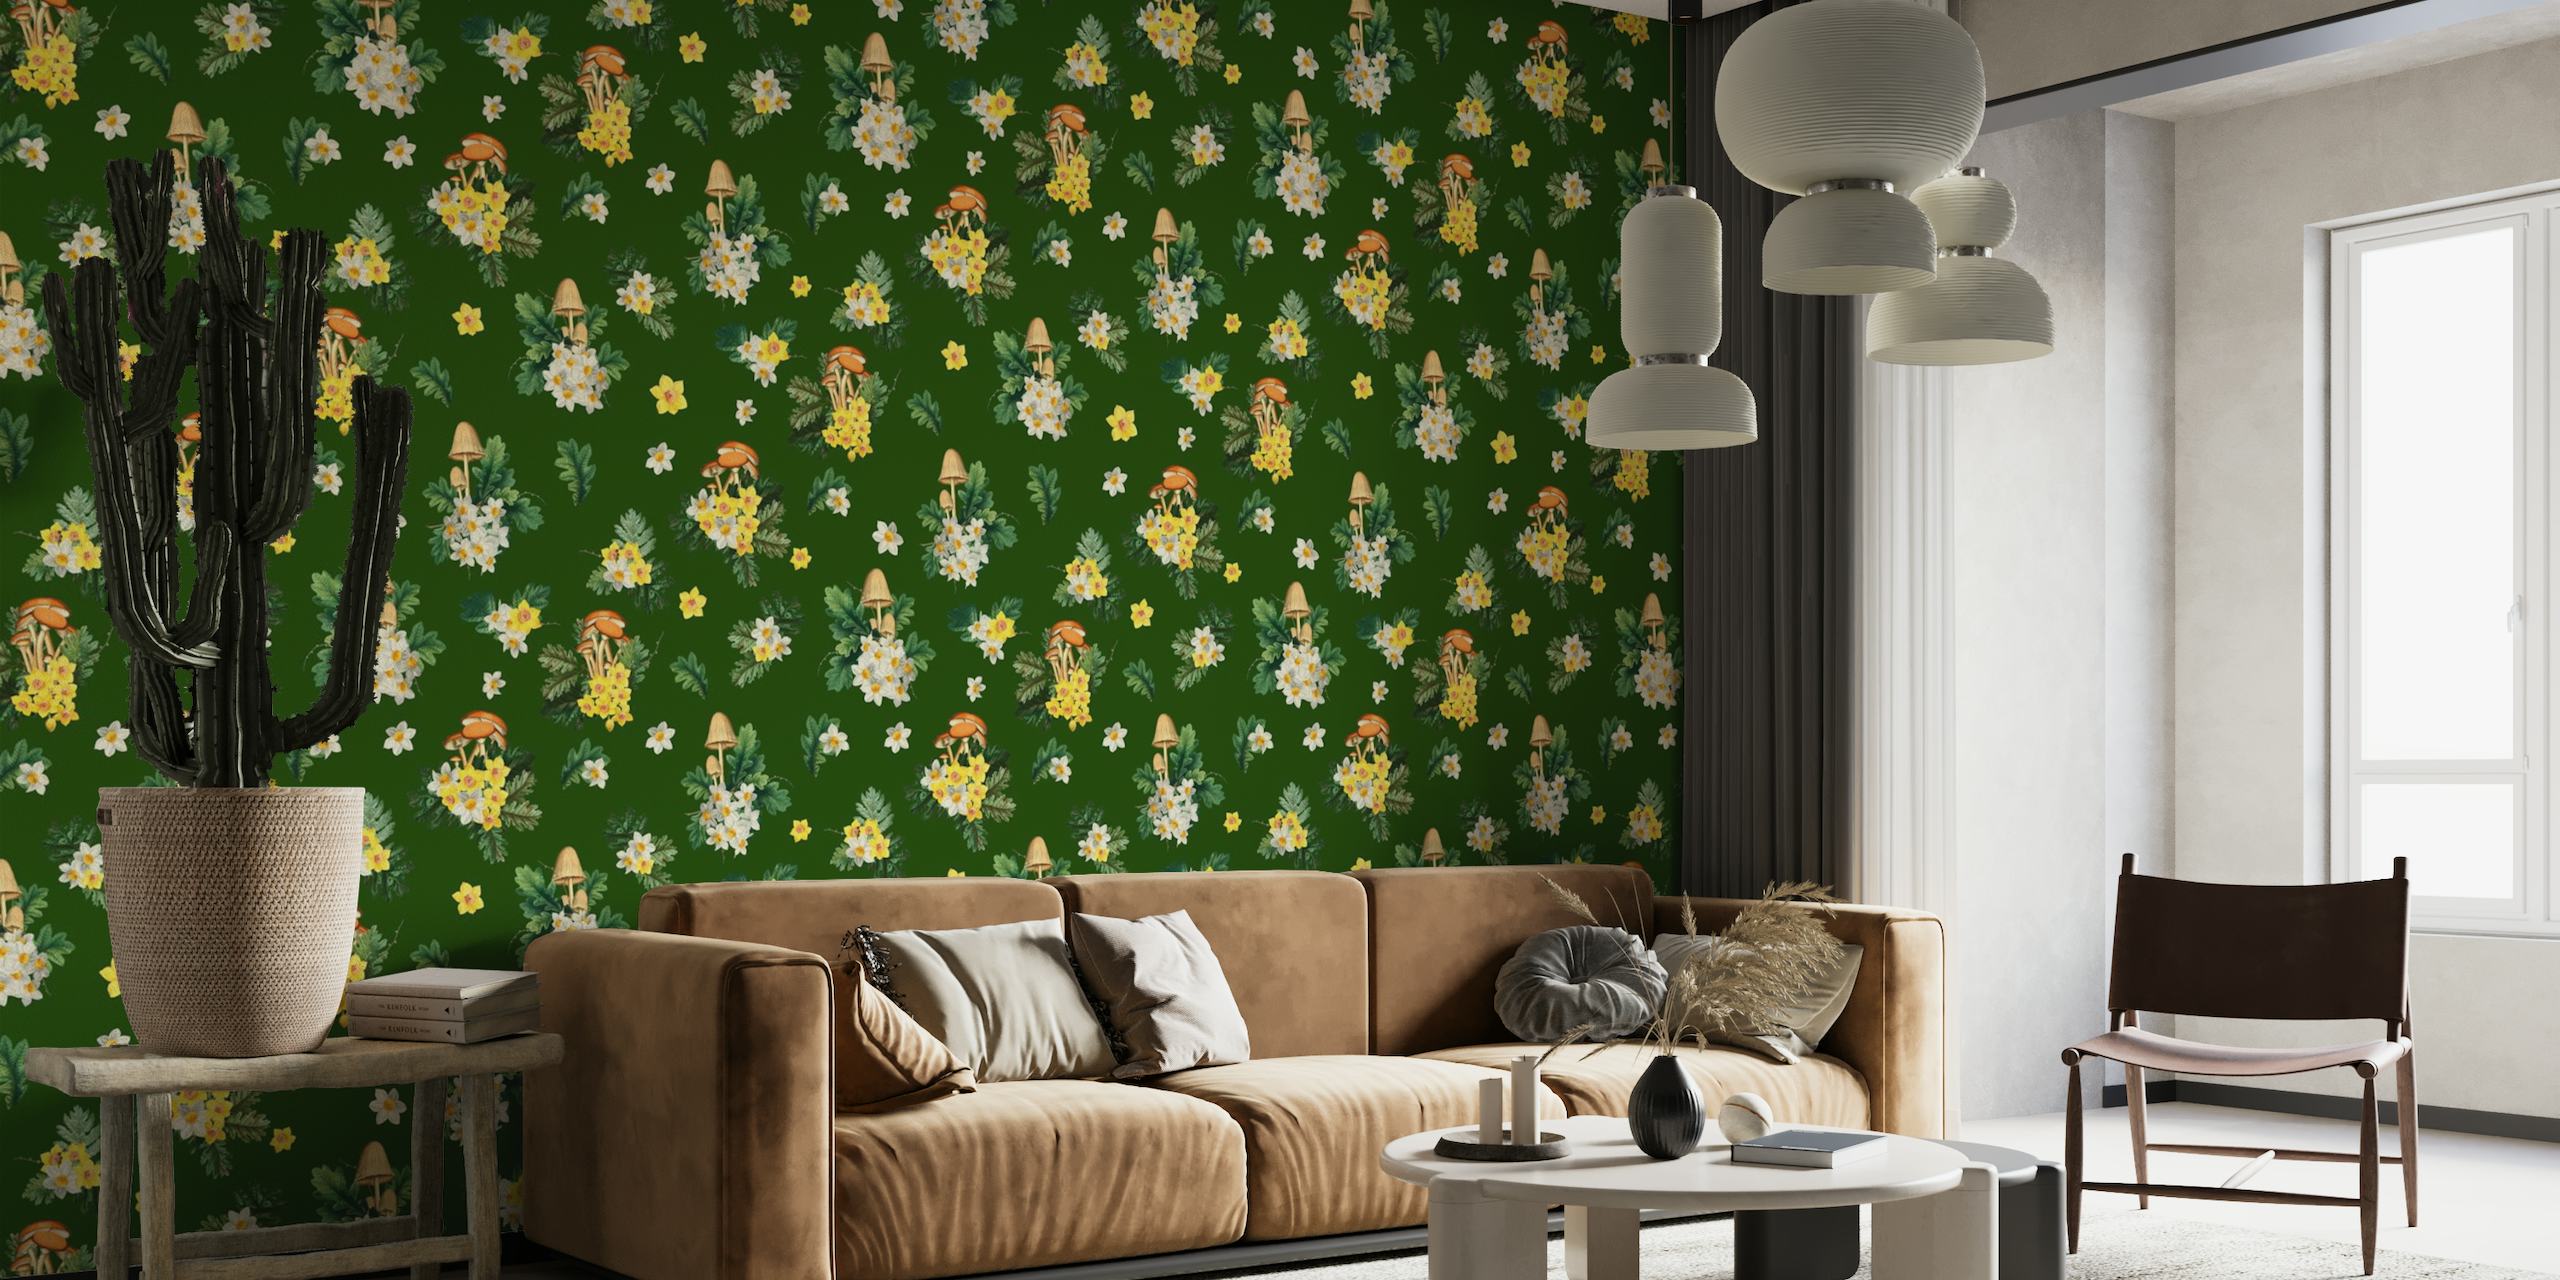 Murale illustrative de champignons et de fleurs sauvages sur fond vert, parfaite pour une pièce sur le thème de la nature.